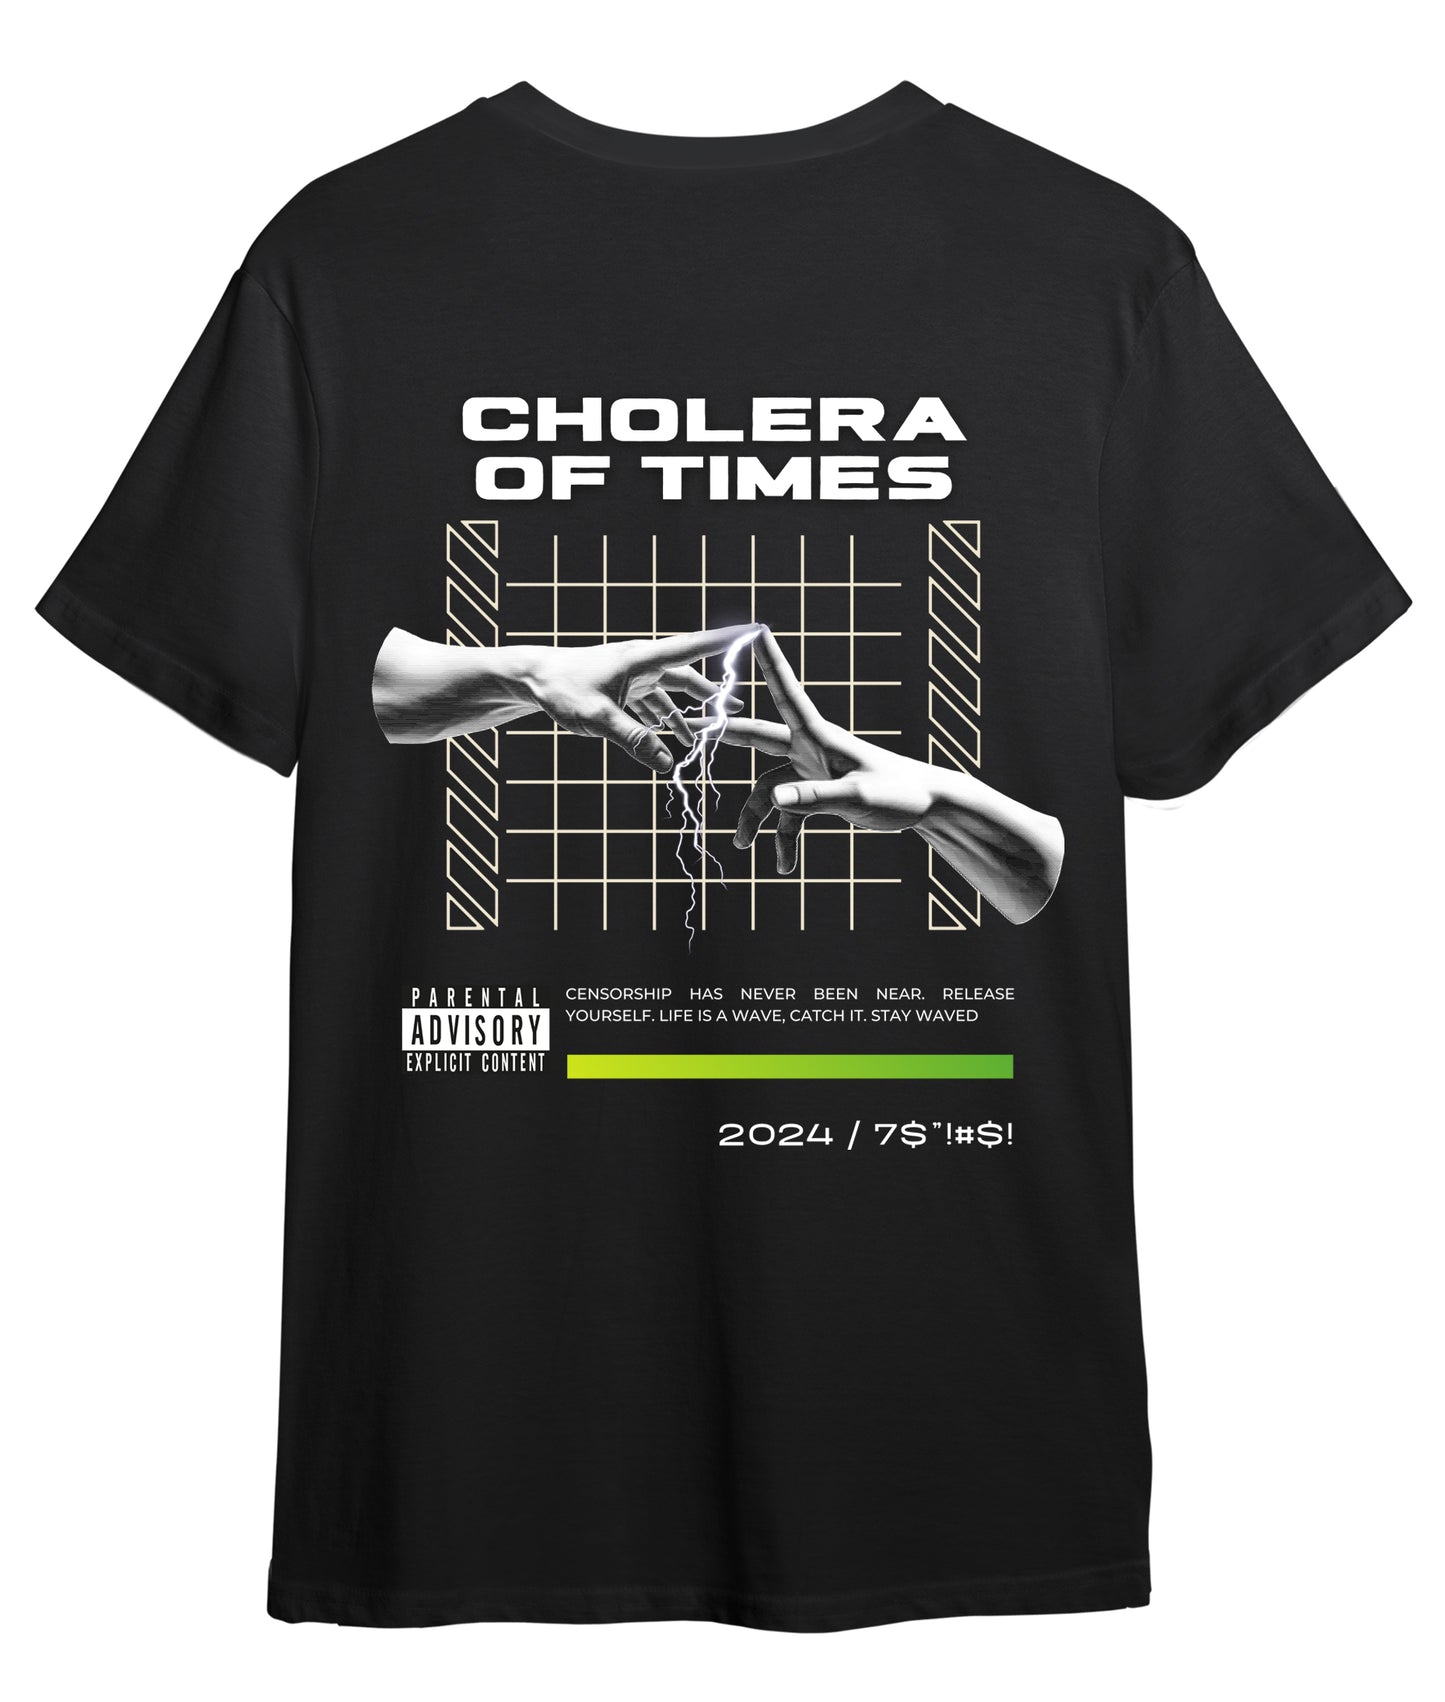 Remera Cholera Of Times Negra